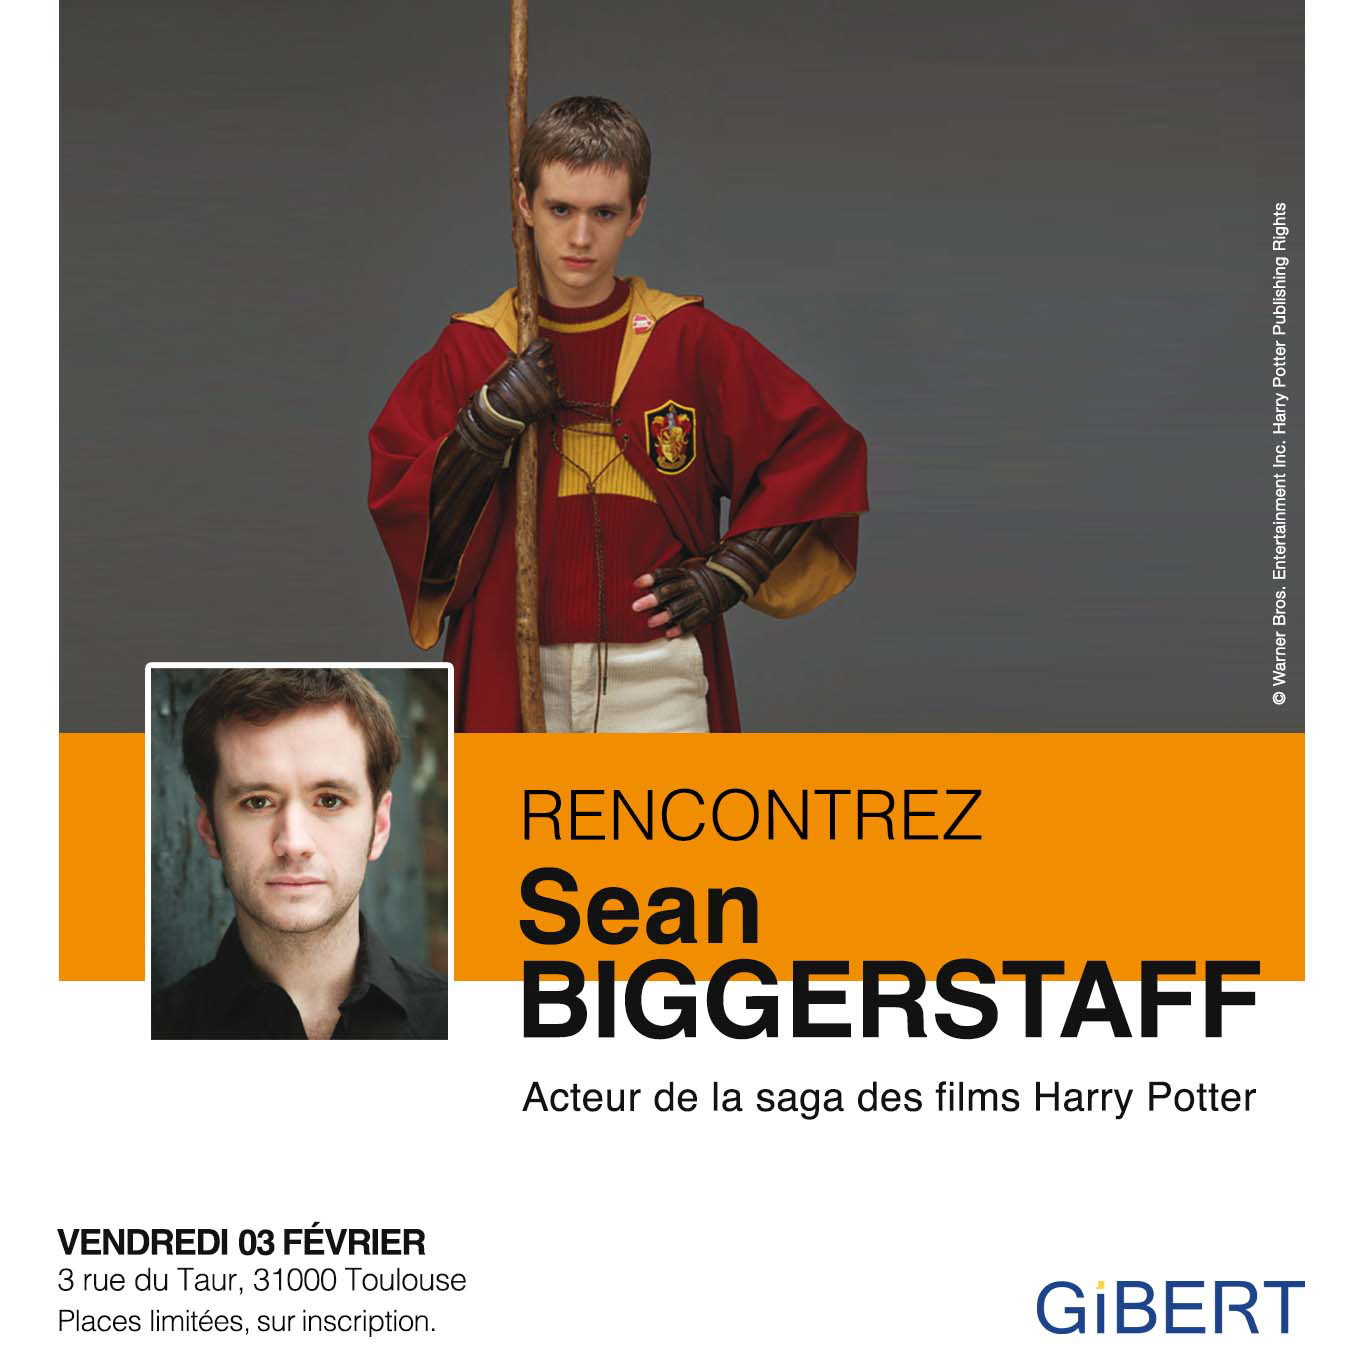 Gibert: Sean Biggerstaff